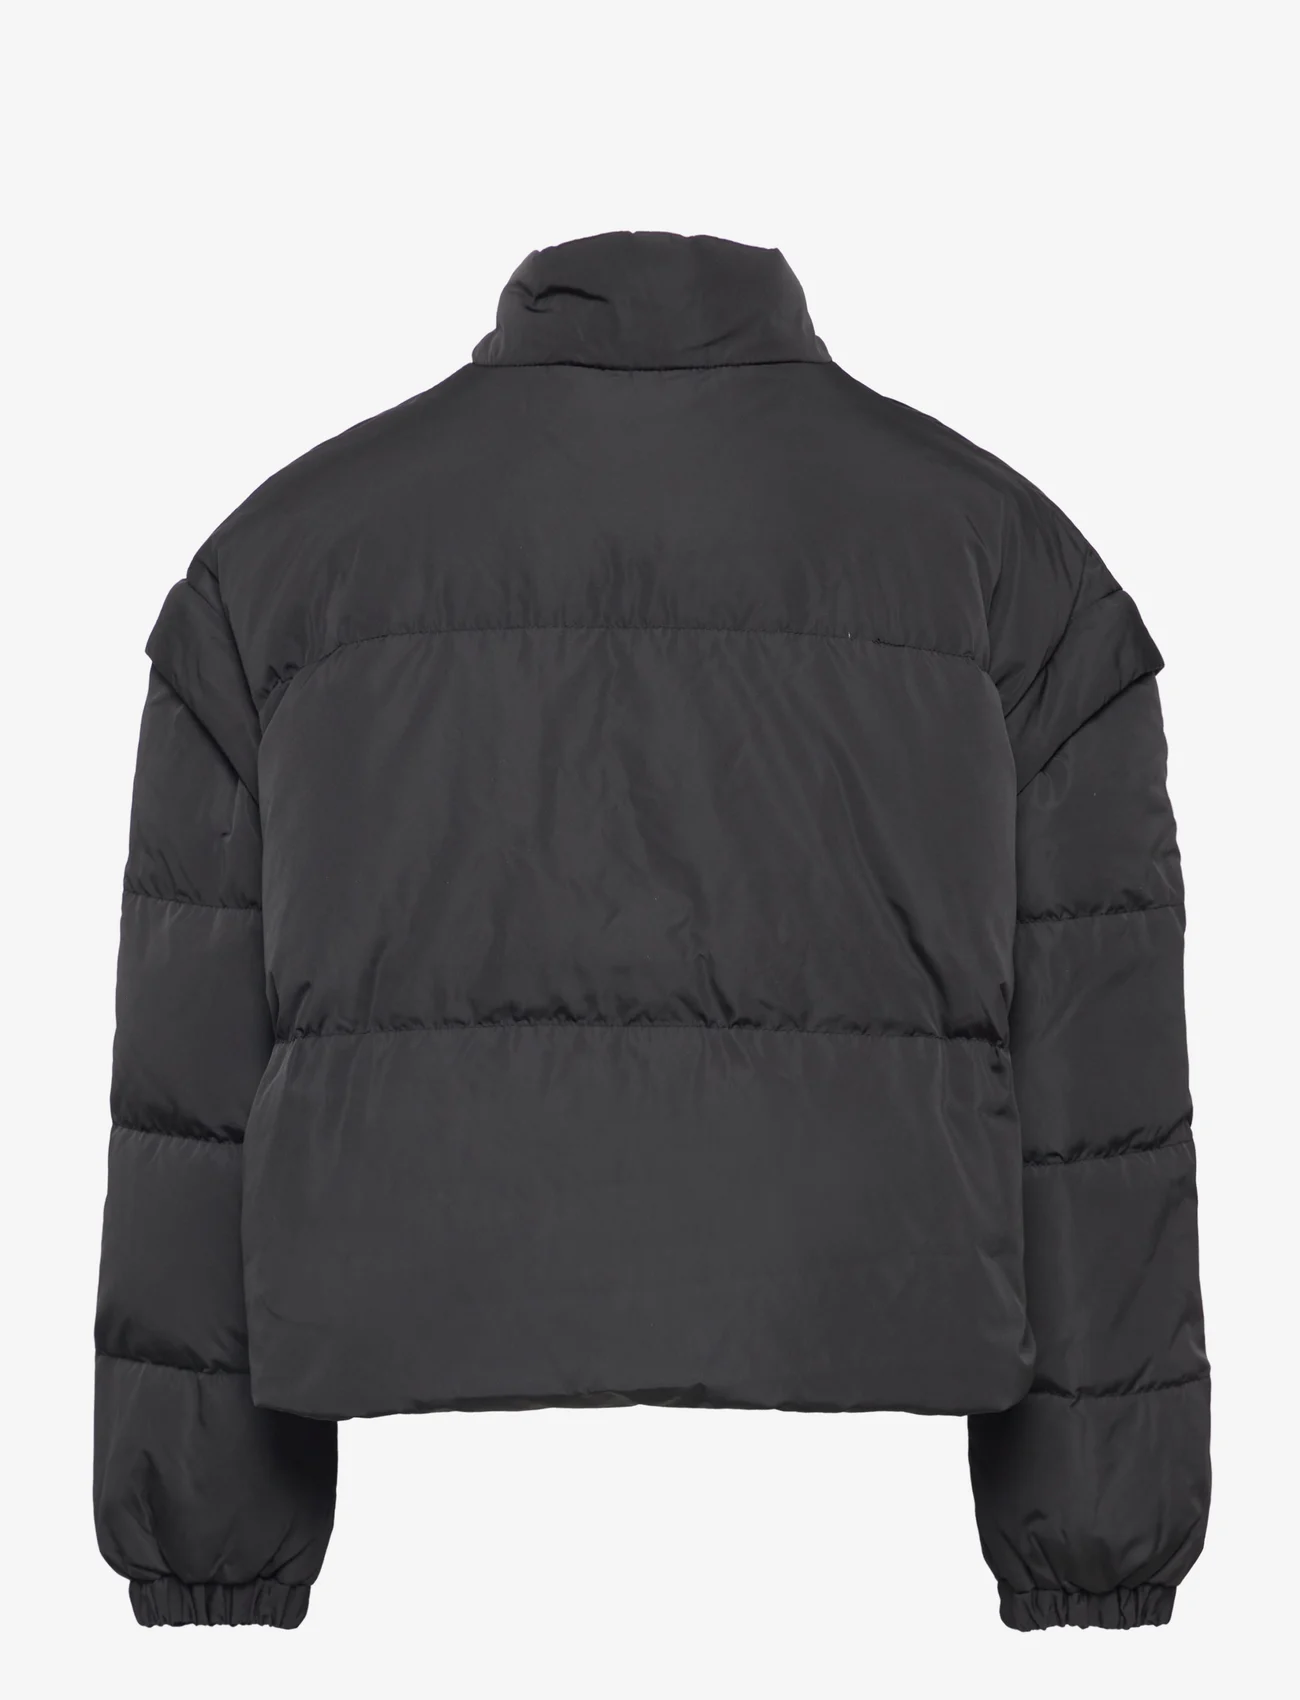 Rosemunde Kids - Detachable down puffer jacket - daunen-& steppjacken - black - 1